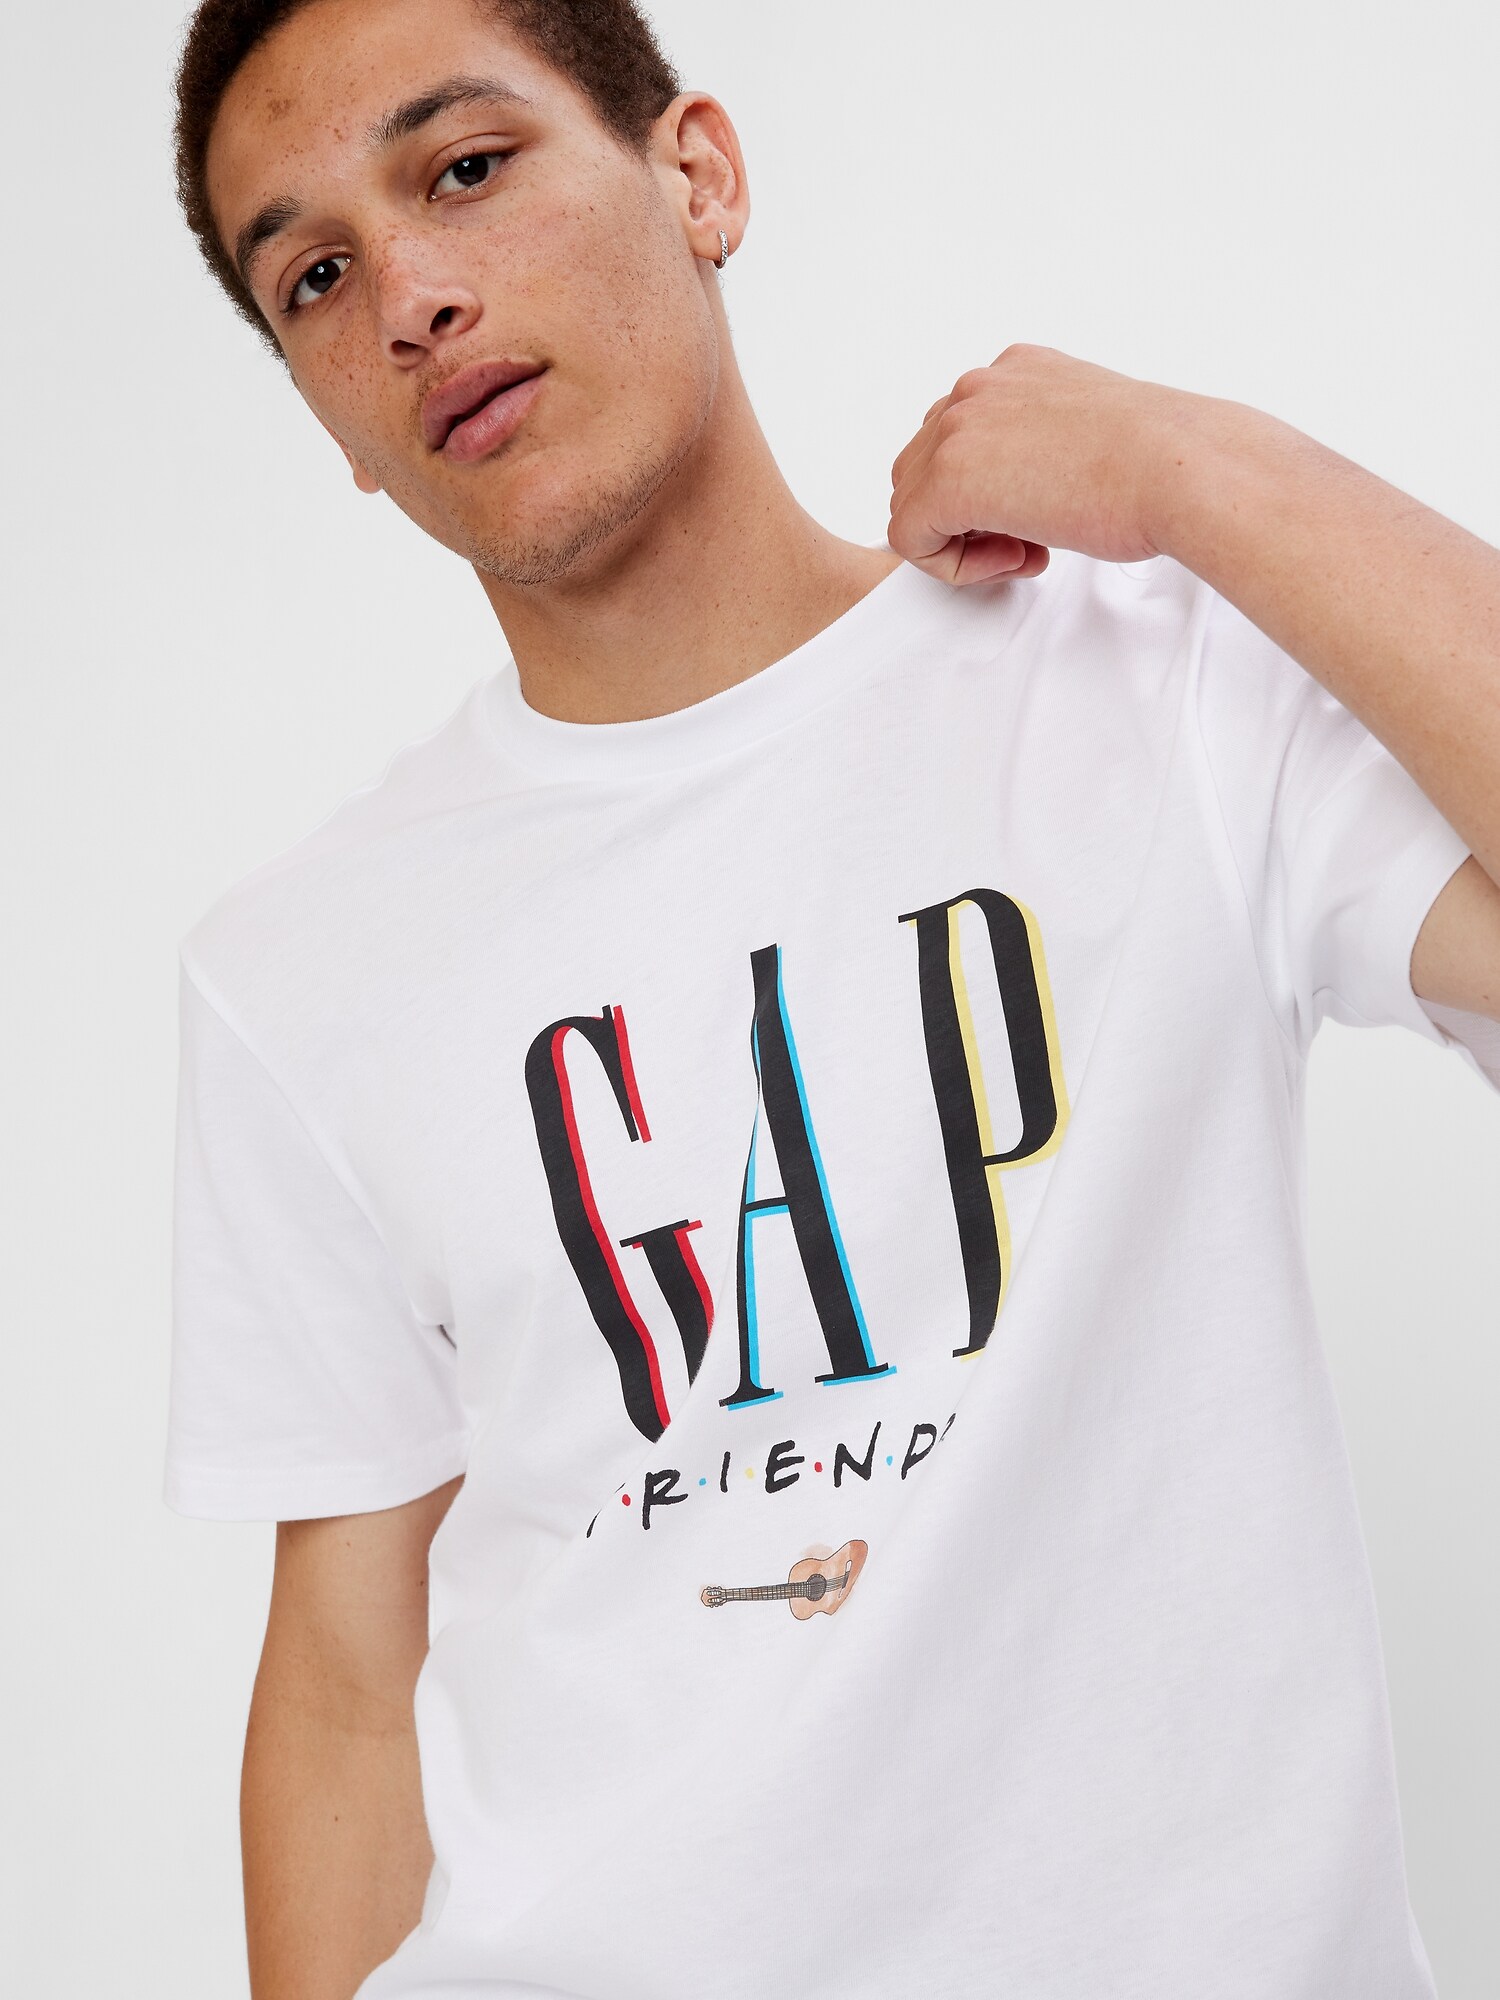 Wb™ フレンズ &#215 Gapロゴ グラフィックtシャツ